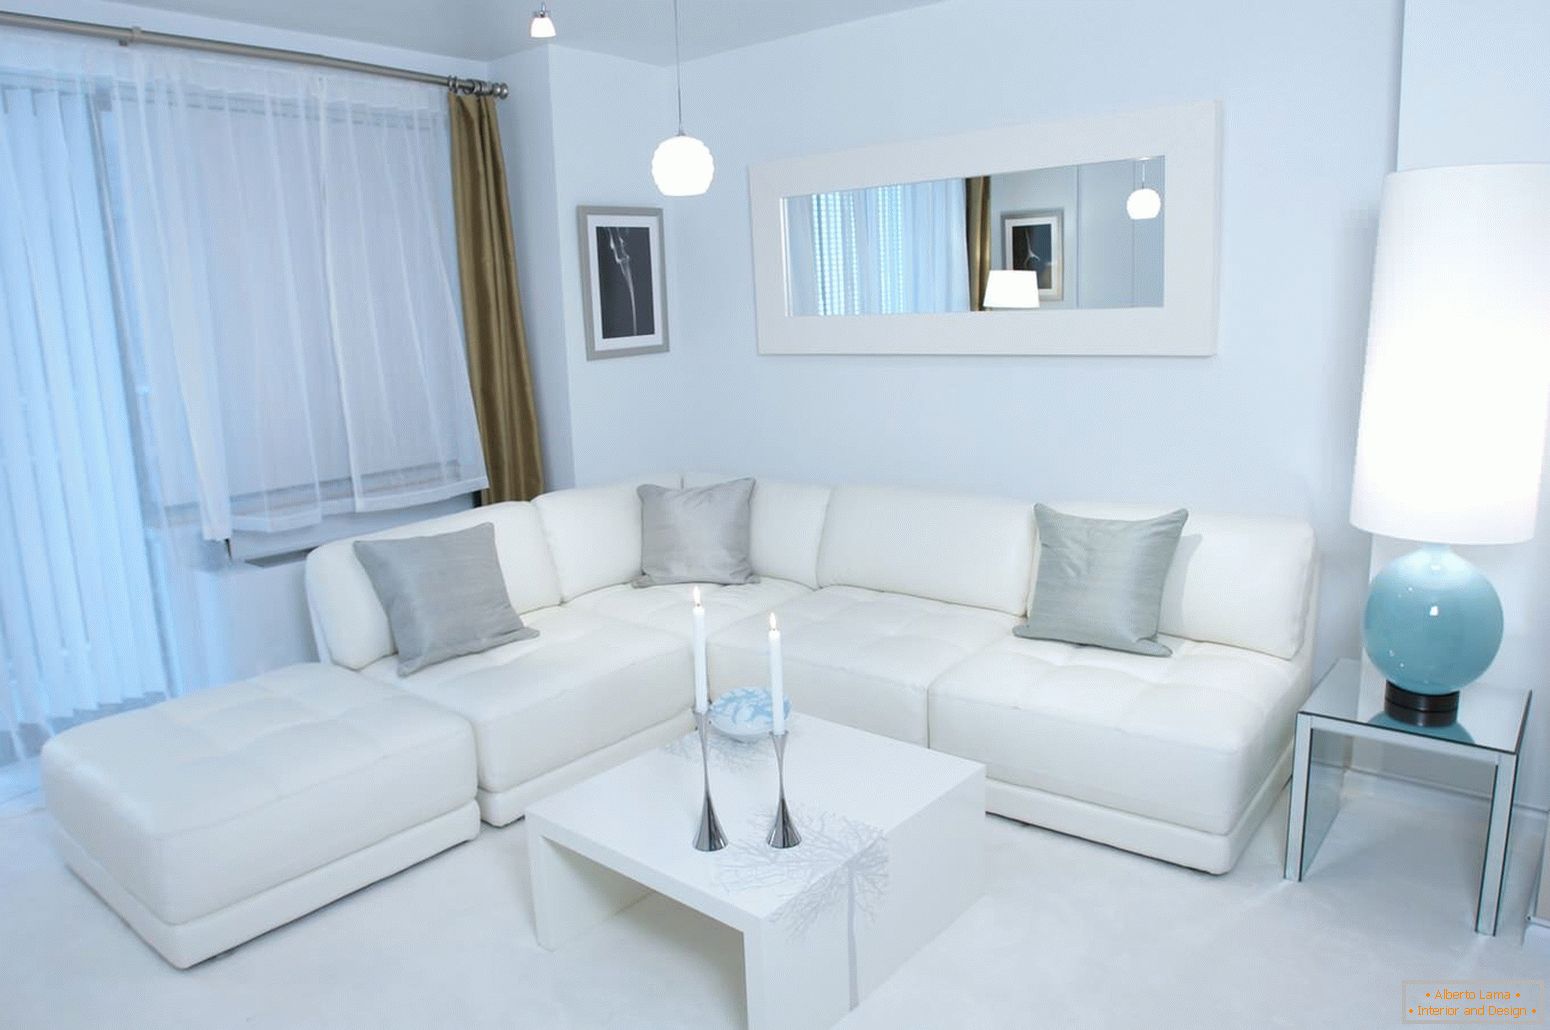 Sofá de canto branco com travesseiros cinza